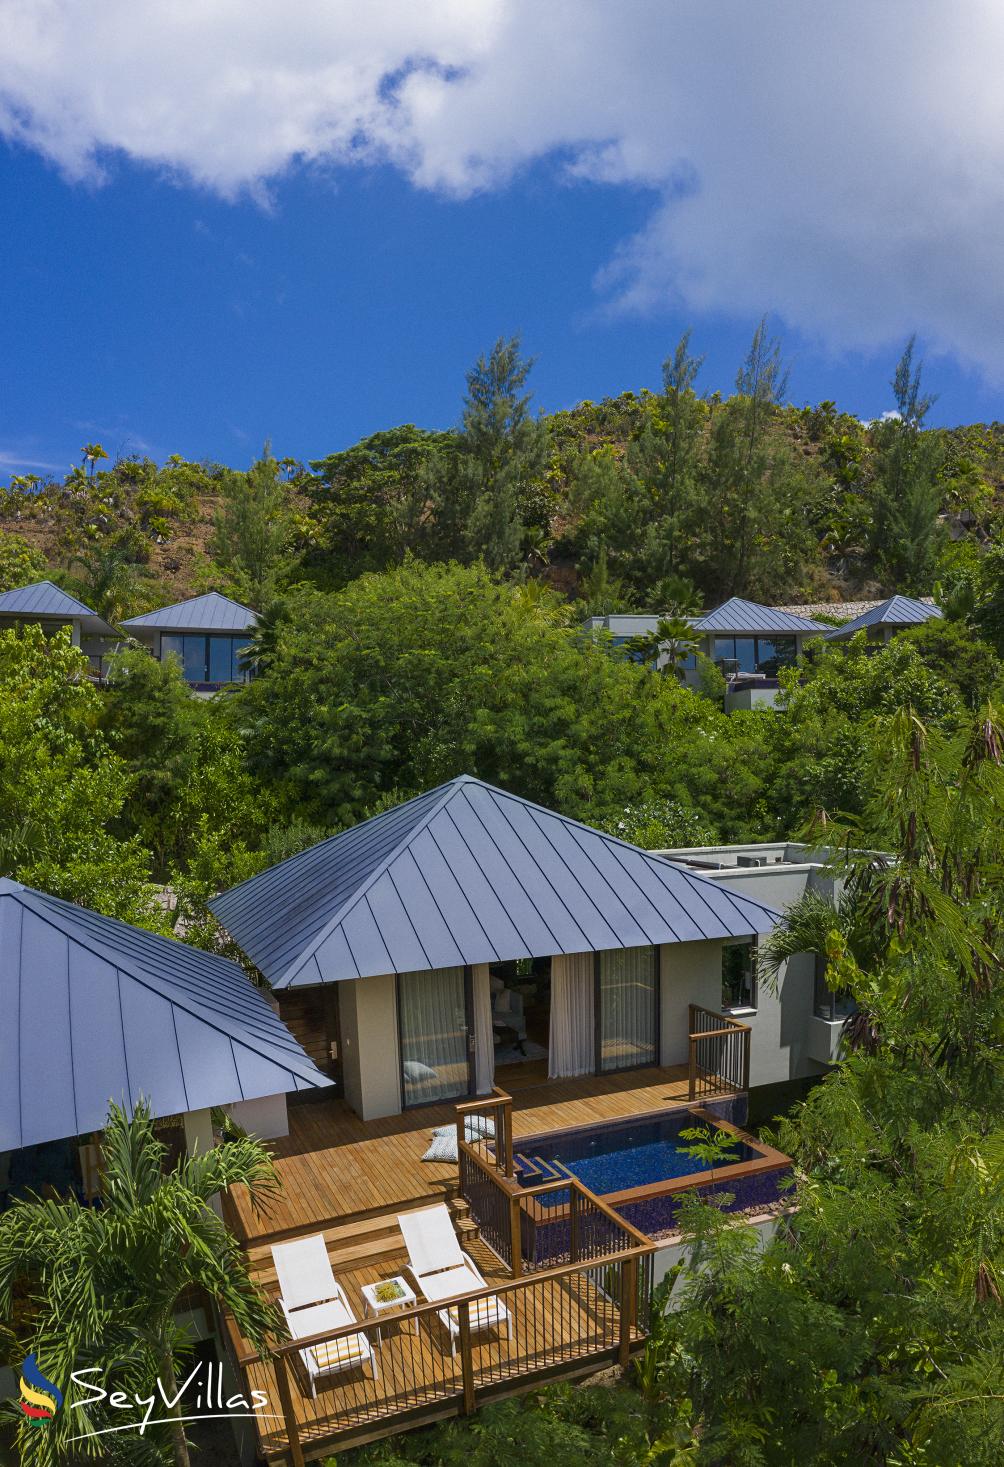 Photo 79: Raffles - Hillside Pool Villa - Praslin (Seychelles)